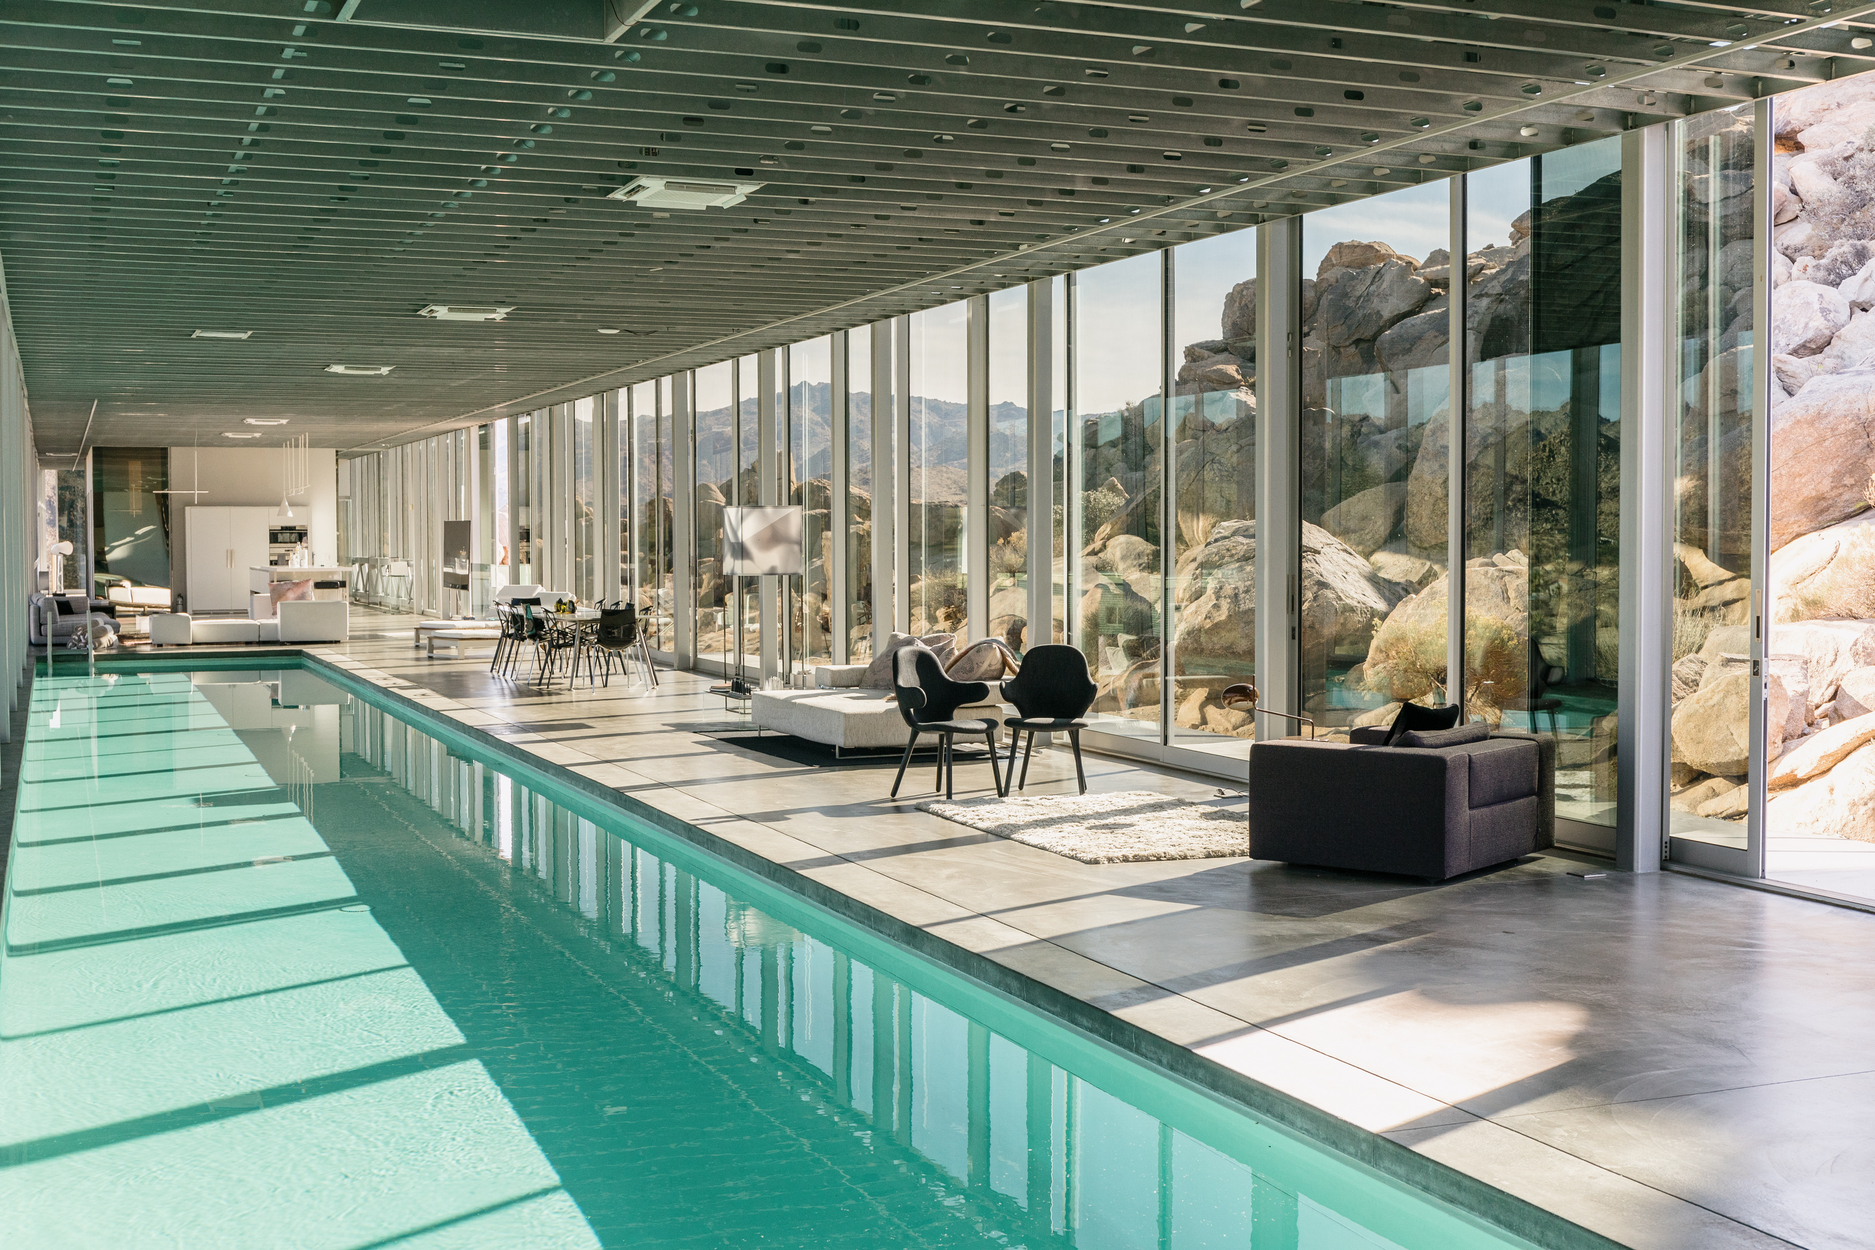 长 100 英尺的室内泳池搭配玻璃墙幕，营造出前卫又超现实的空间场景。